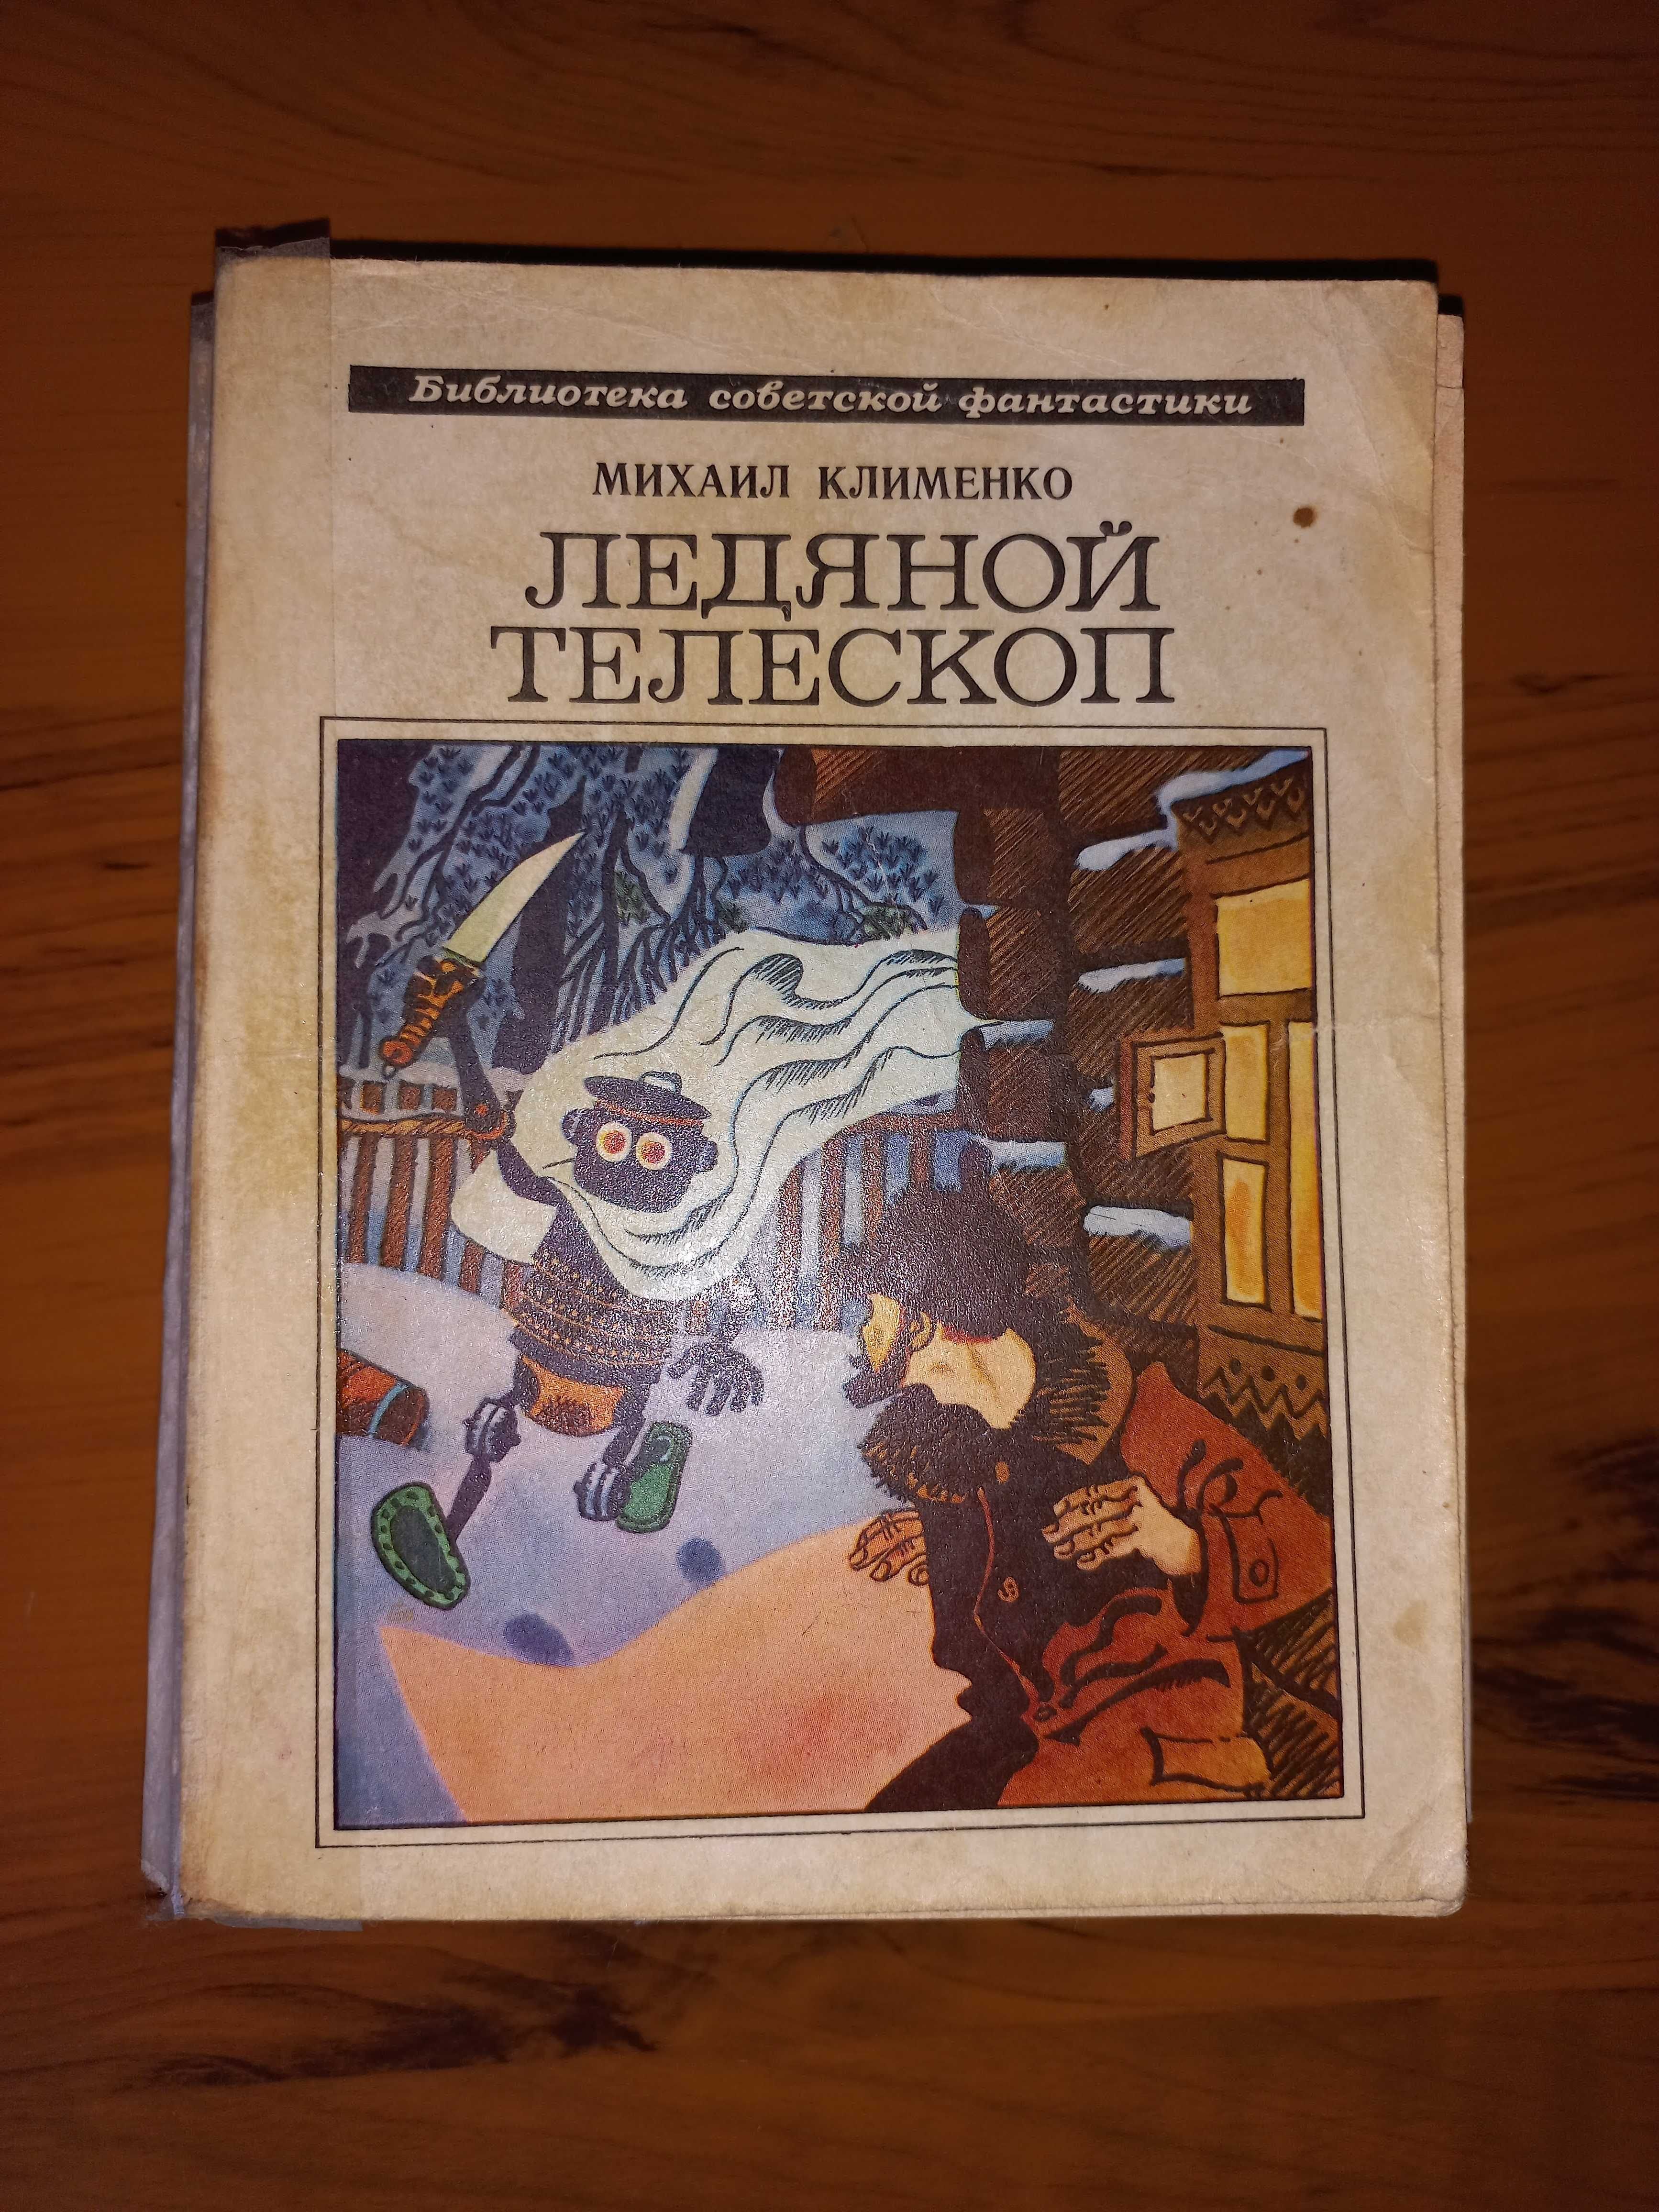 Фантастика. Книги изданные в советское время